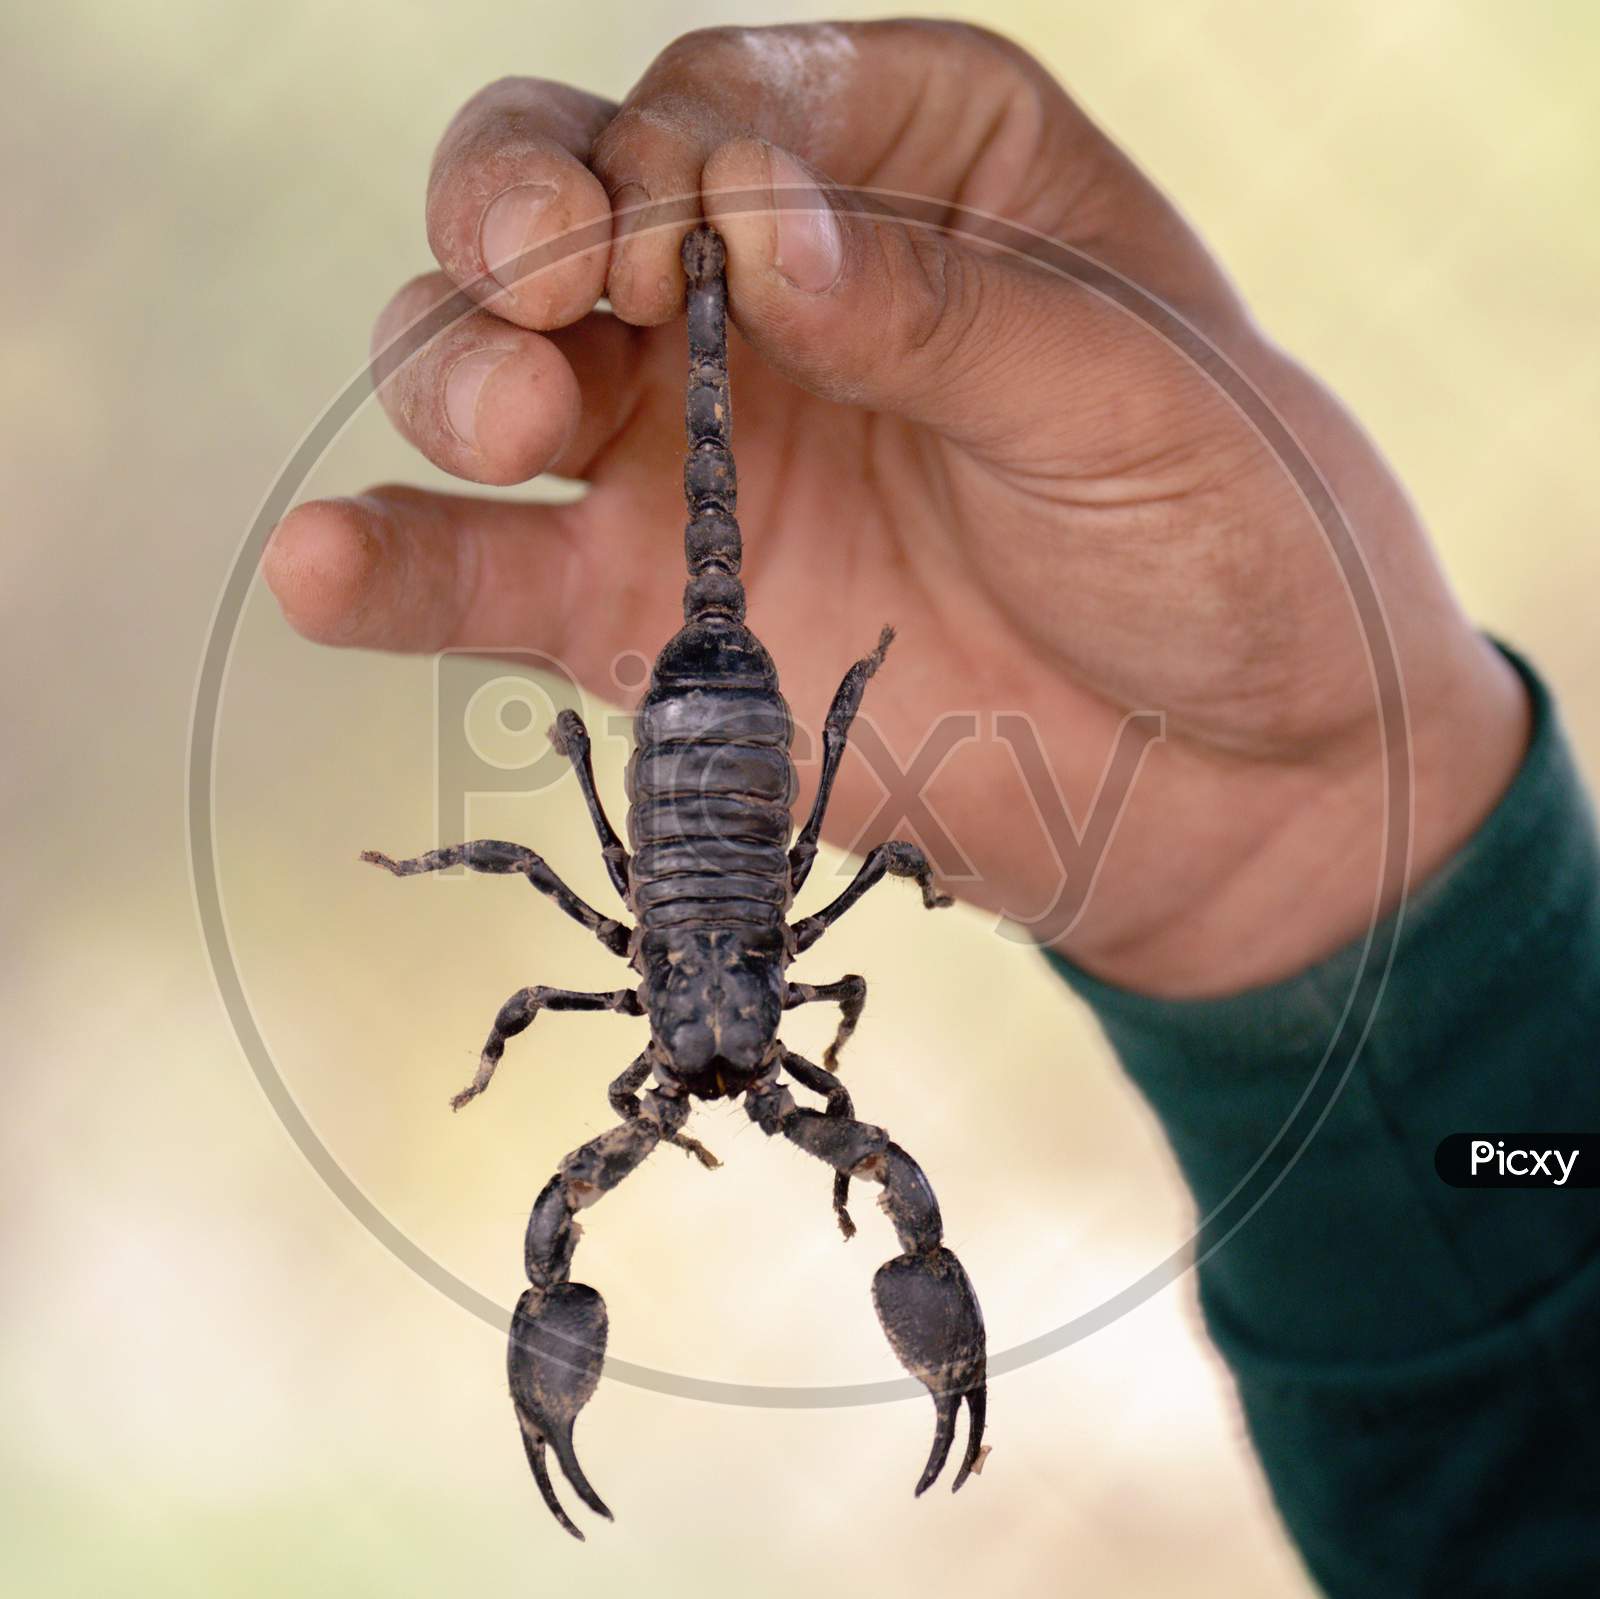 Villager holds venomous poisons scorpion